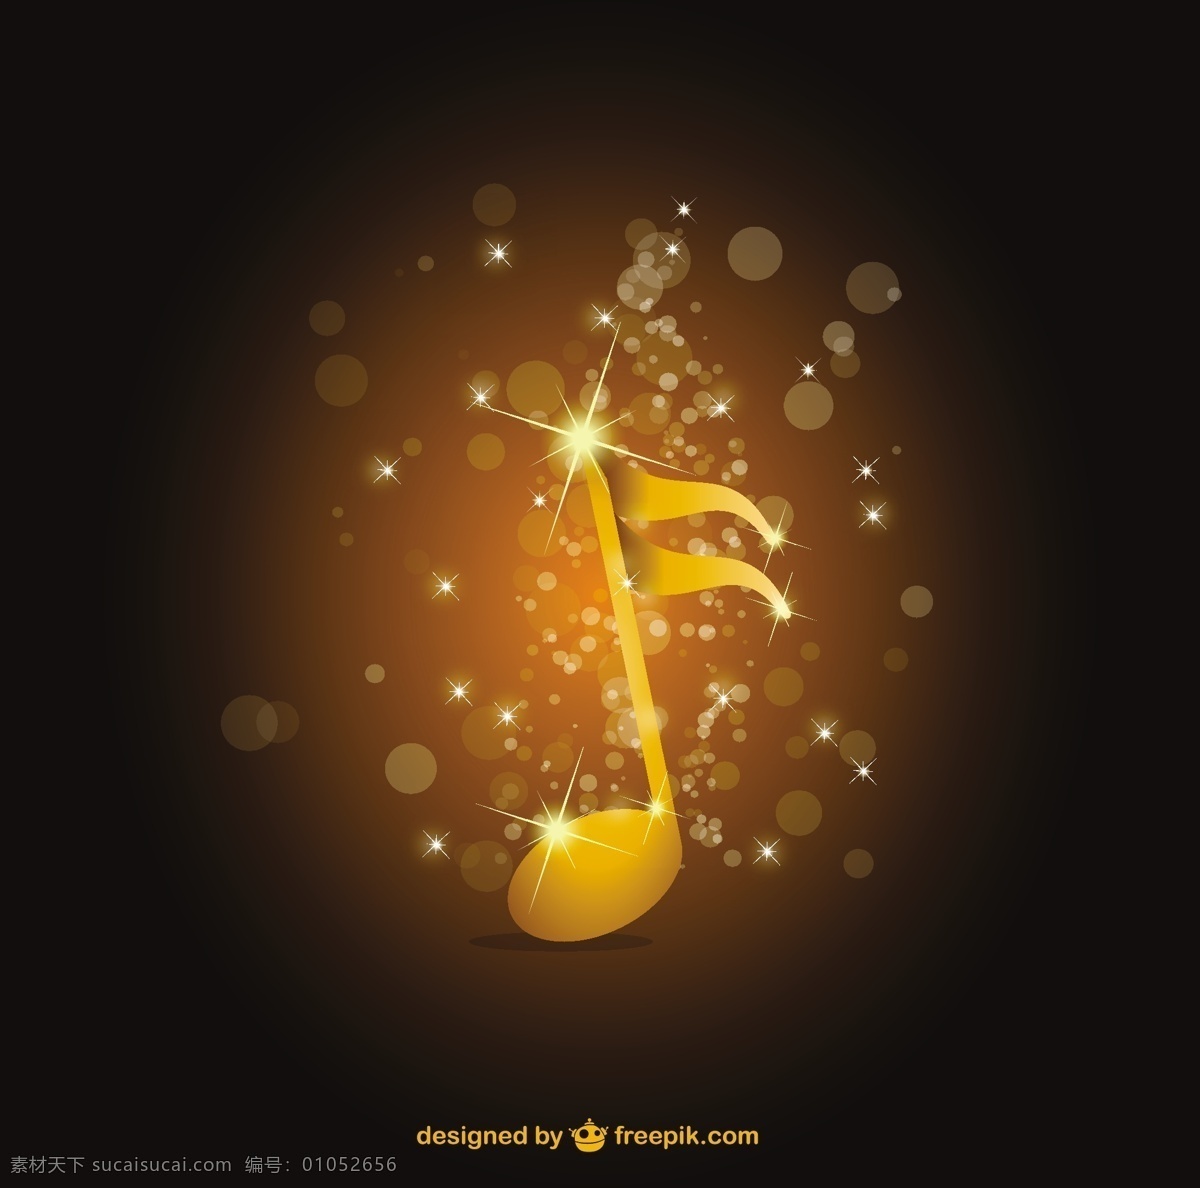 闪亮 金色 音符 背景 音乐 抽象 模板 艺术 壁纸 图形 笔记 图形设计 声音 元素 音乐背景 插图 设计元素 黑色